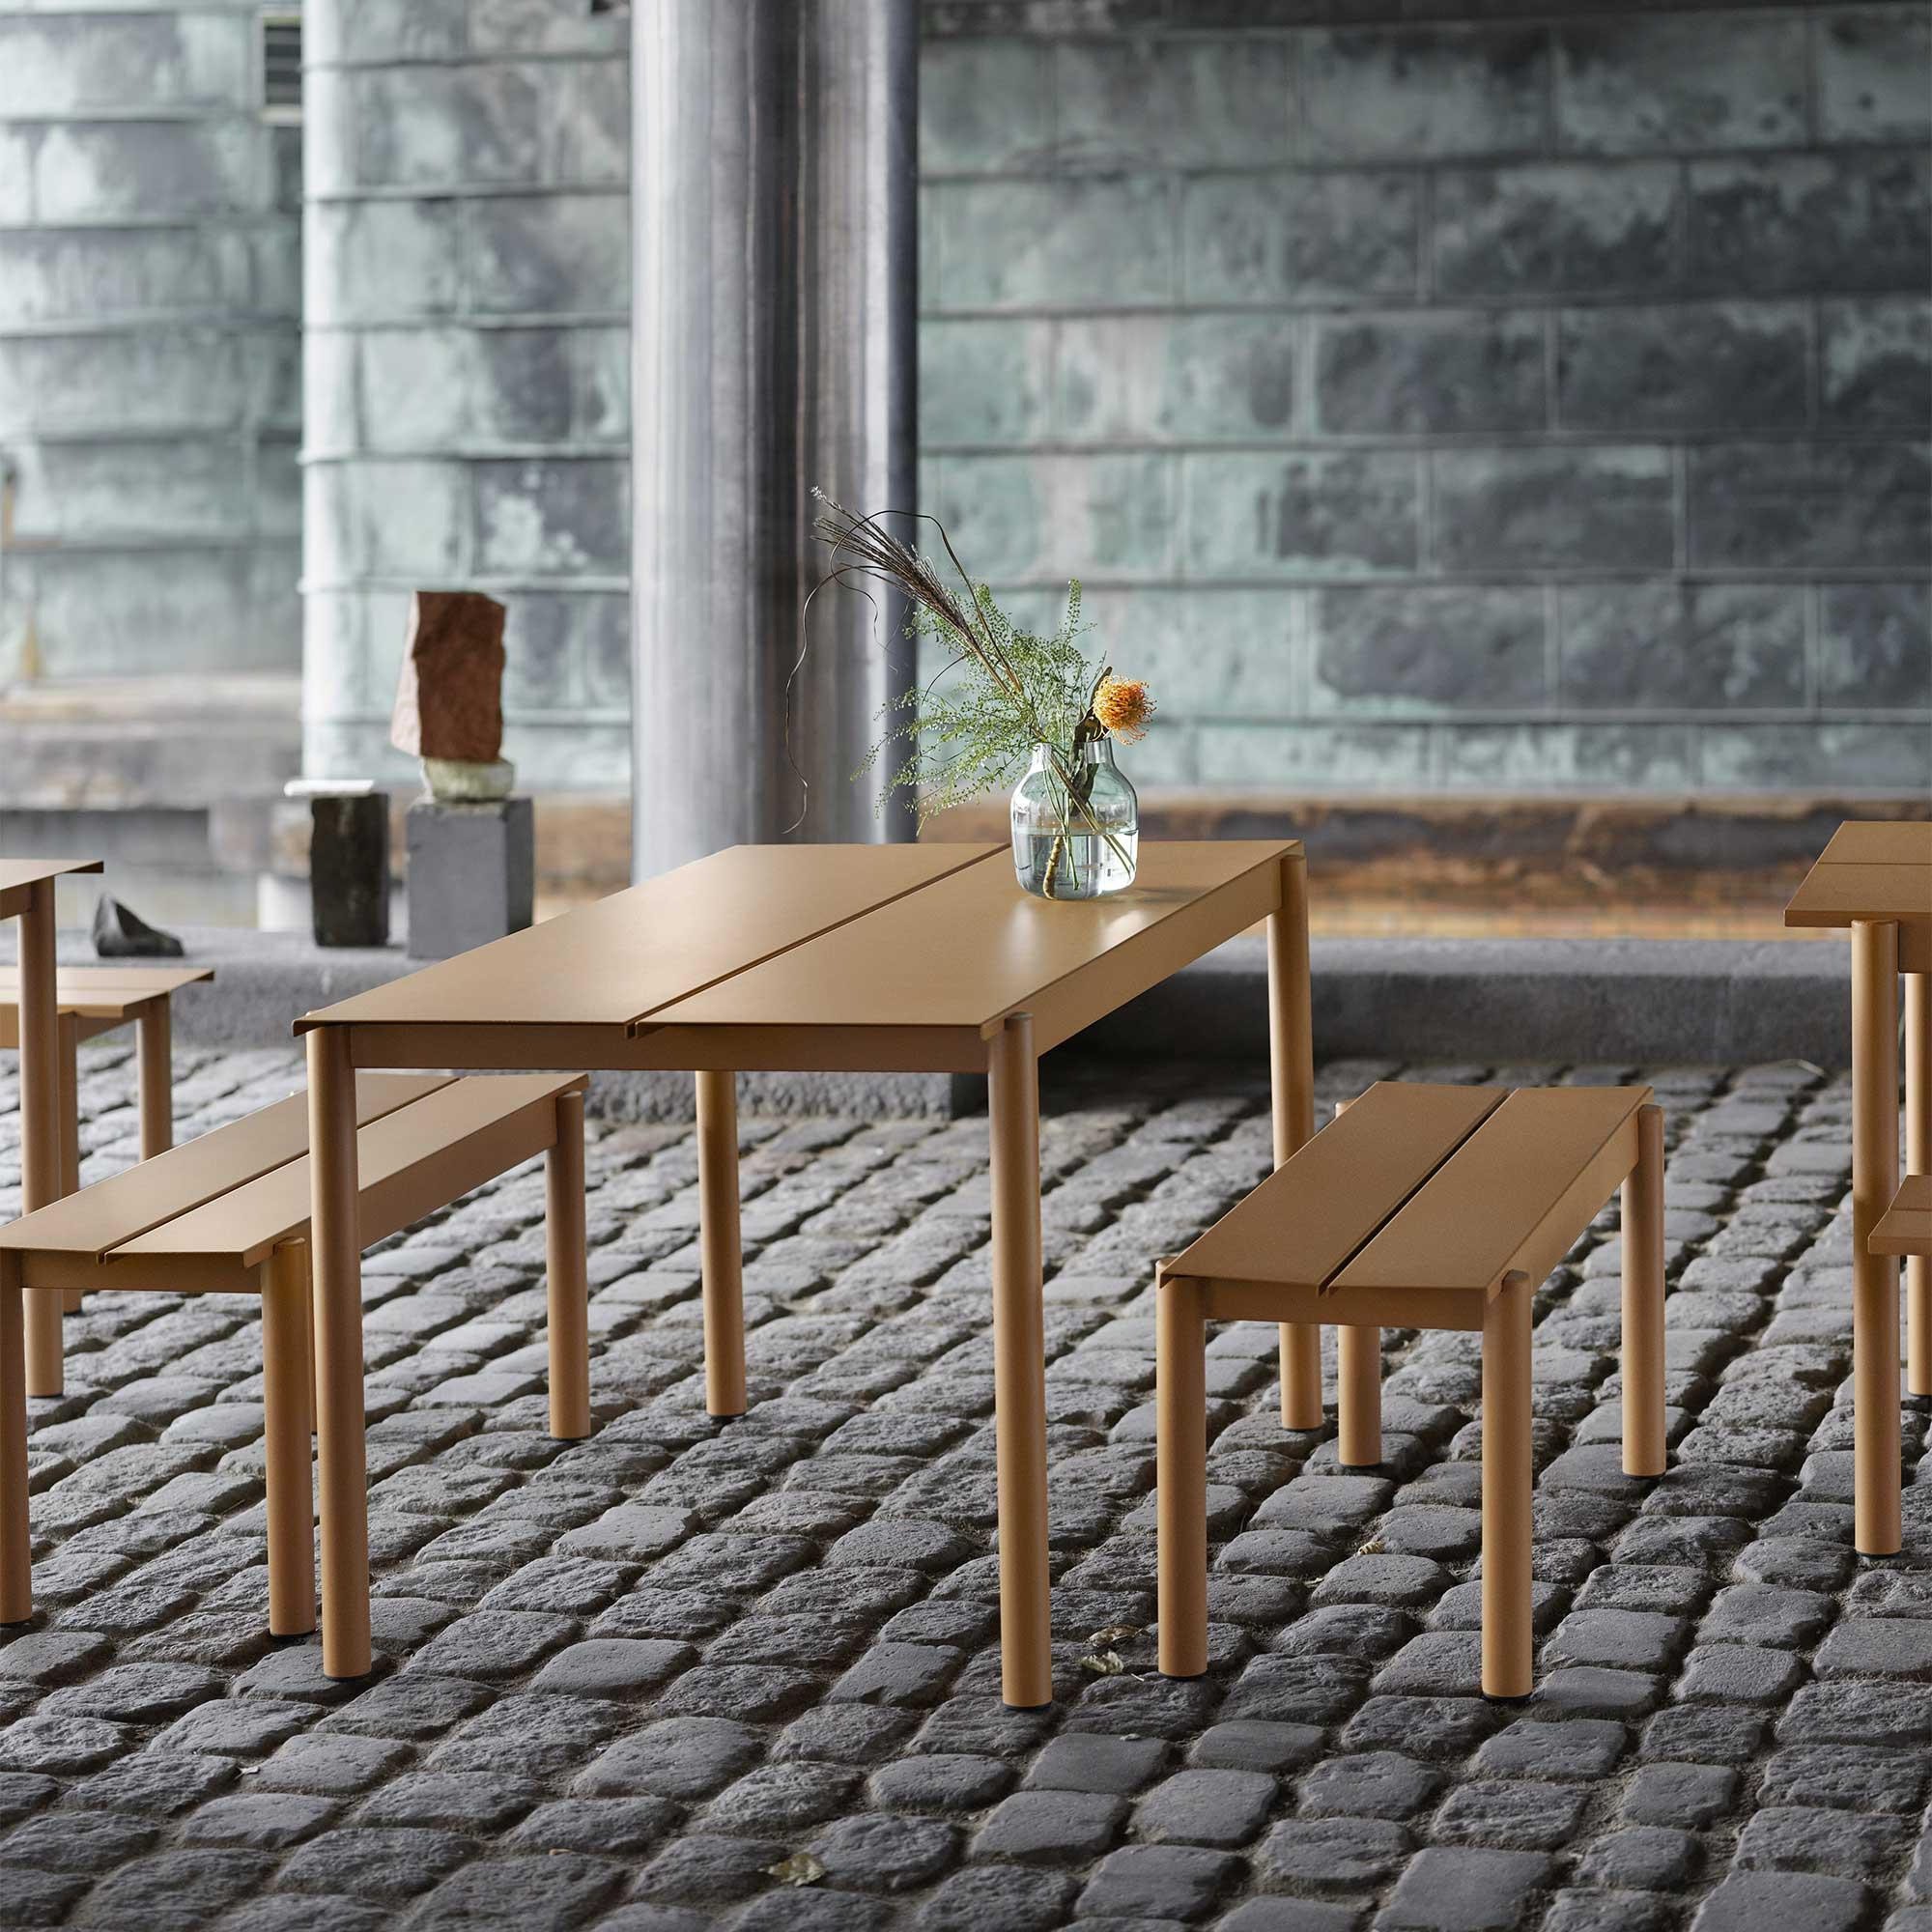 Teak Gartenbank Einzigartig Linear Steel Outdoor Table 140x75cm